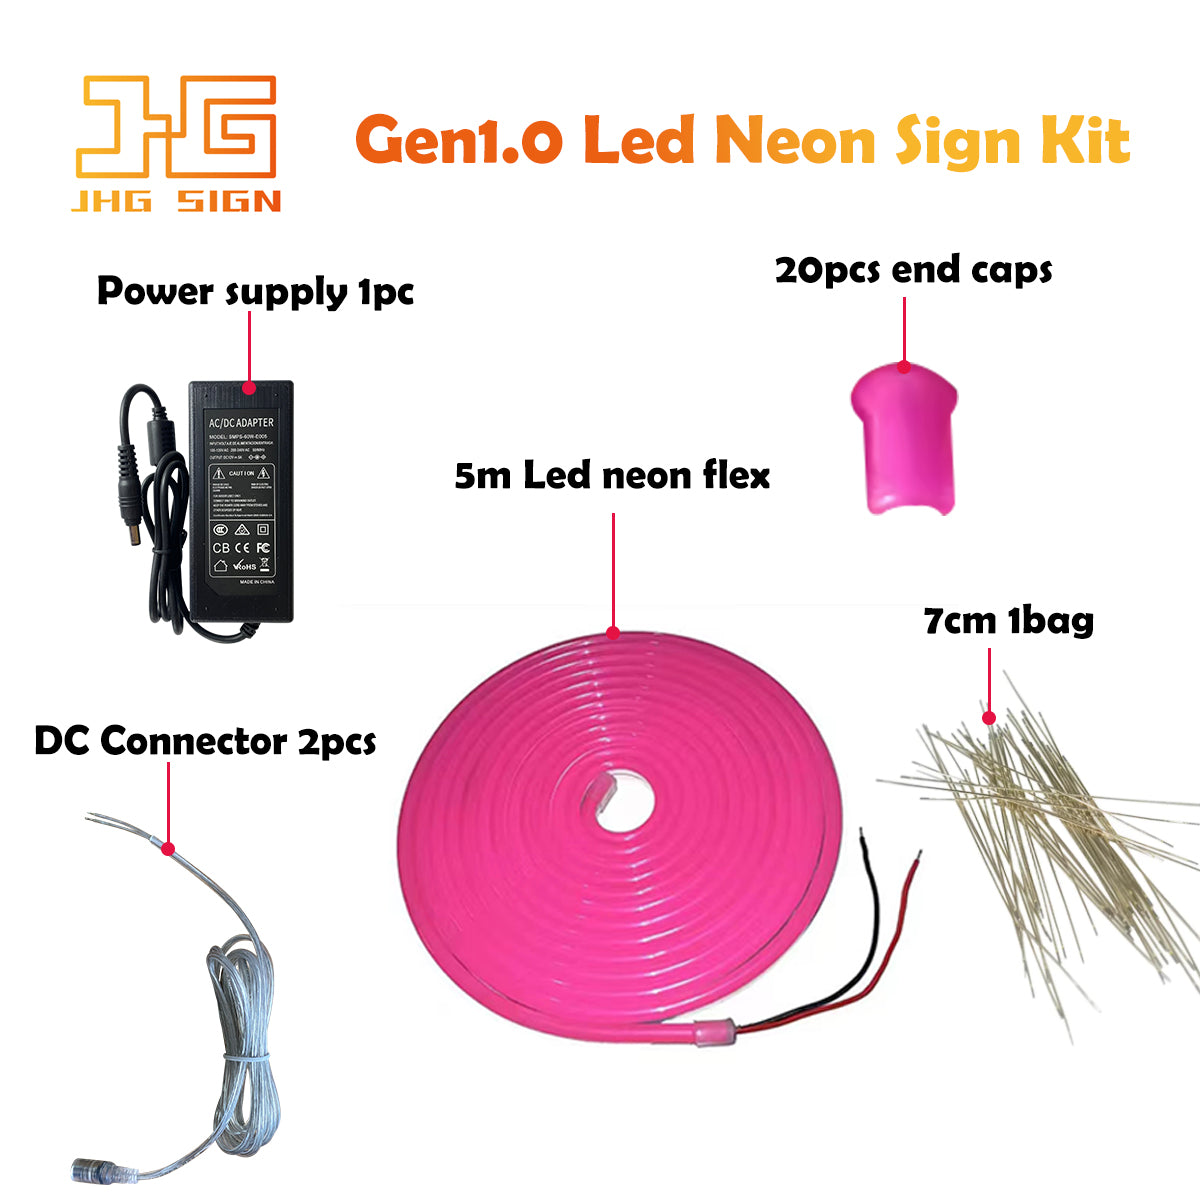 Gen 1.0 Led neon sign Basic Kit